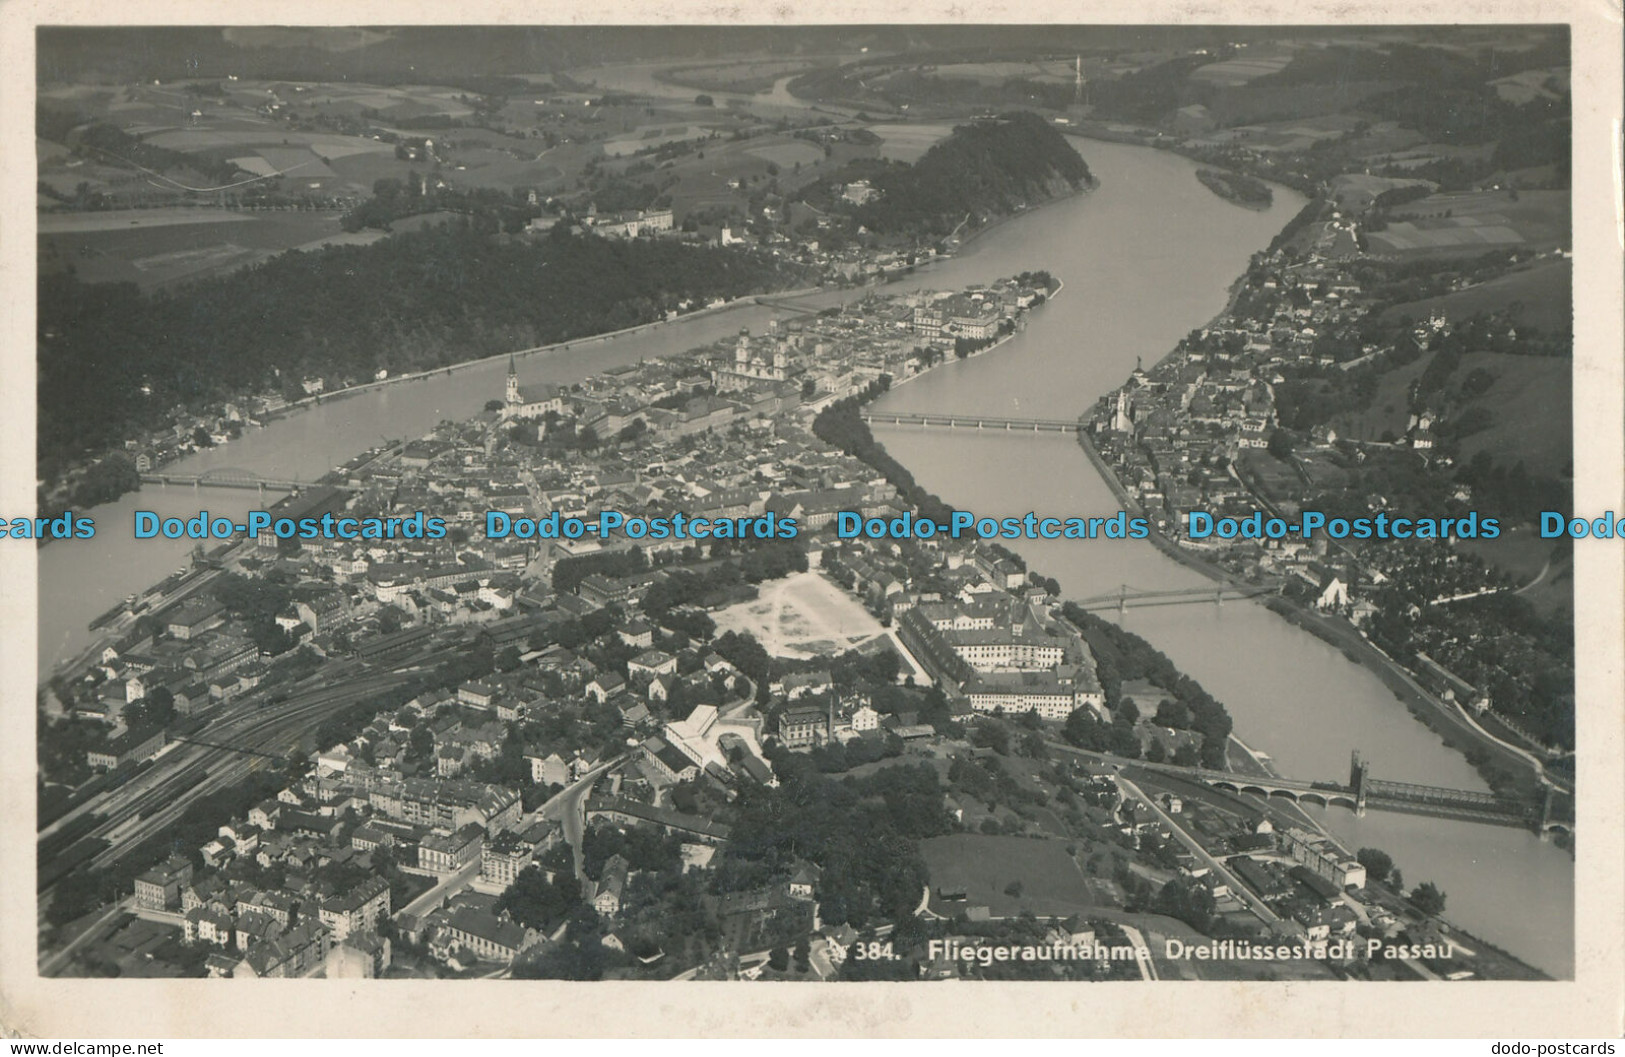 R009723 Fliegeraufnahme Dreiflussestadt Passau. Martin Herpich. RP - Monde